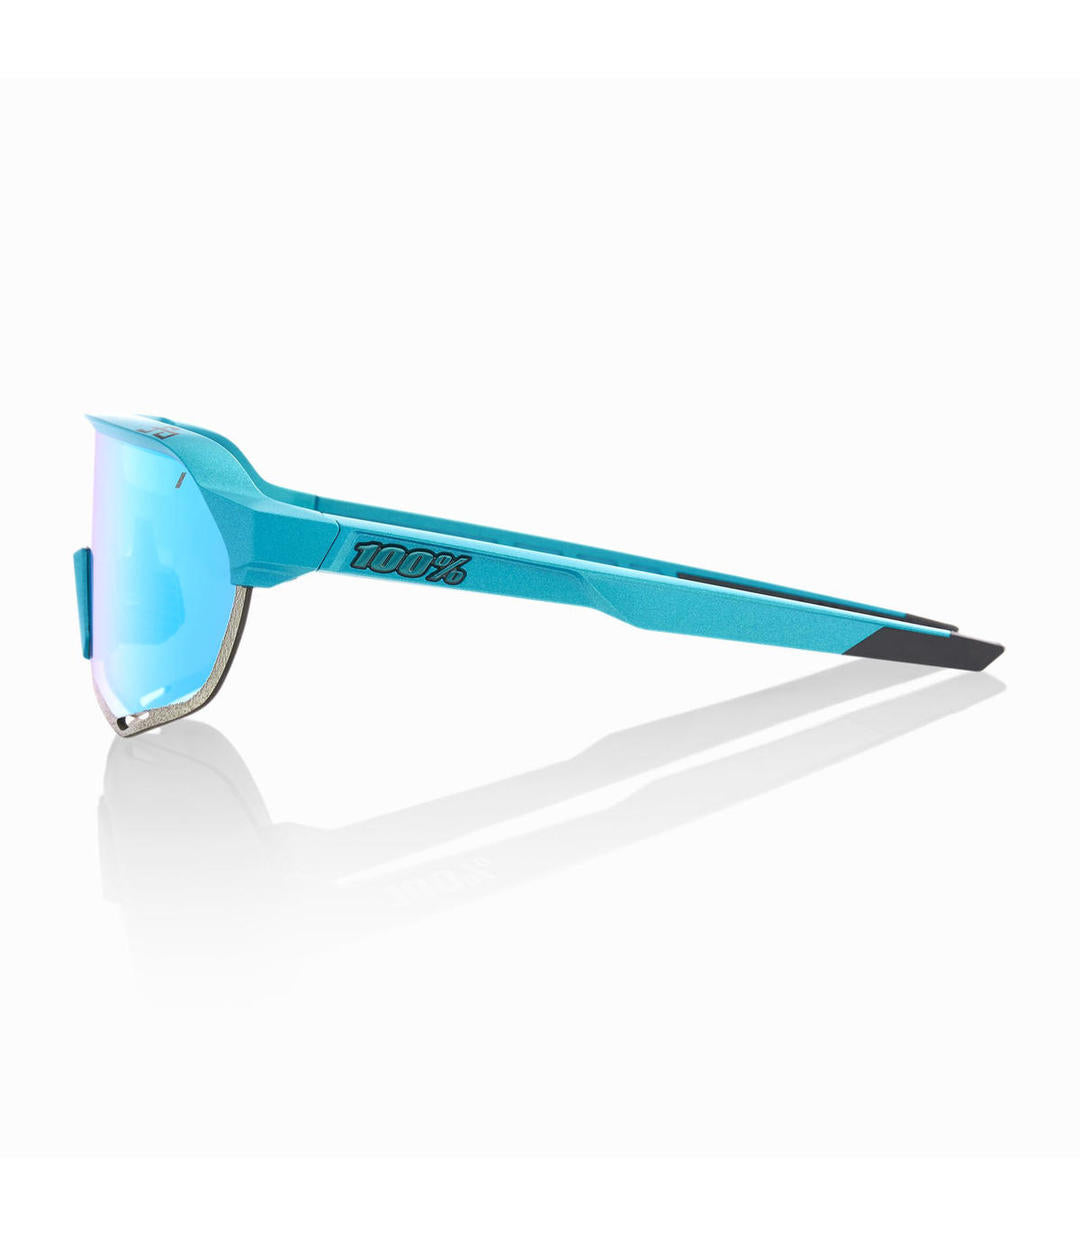 RIDE 100% Gafas de Sol S2 Peter Sagan LE Blue Topaz Multilayer - Azul Topacio